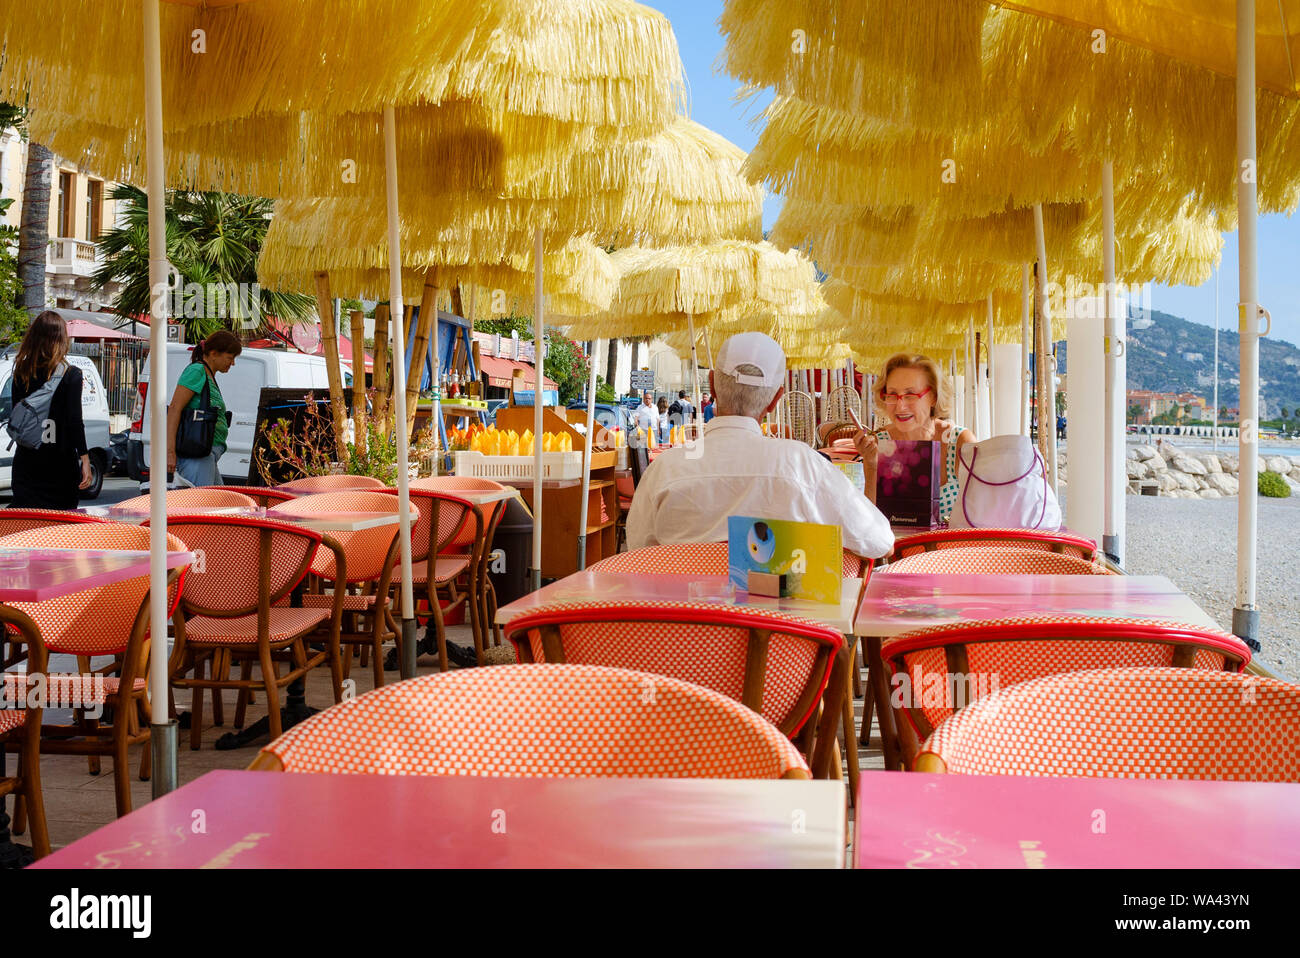 Pareja de ancianos, disfrutar de una comida al aire libre en una playa-side street café / restaurante en el casco antiguo de la ciudad de Menton en la Cote d'Azur de Francia del Sur Foto de stock